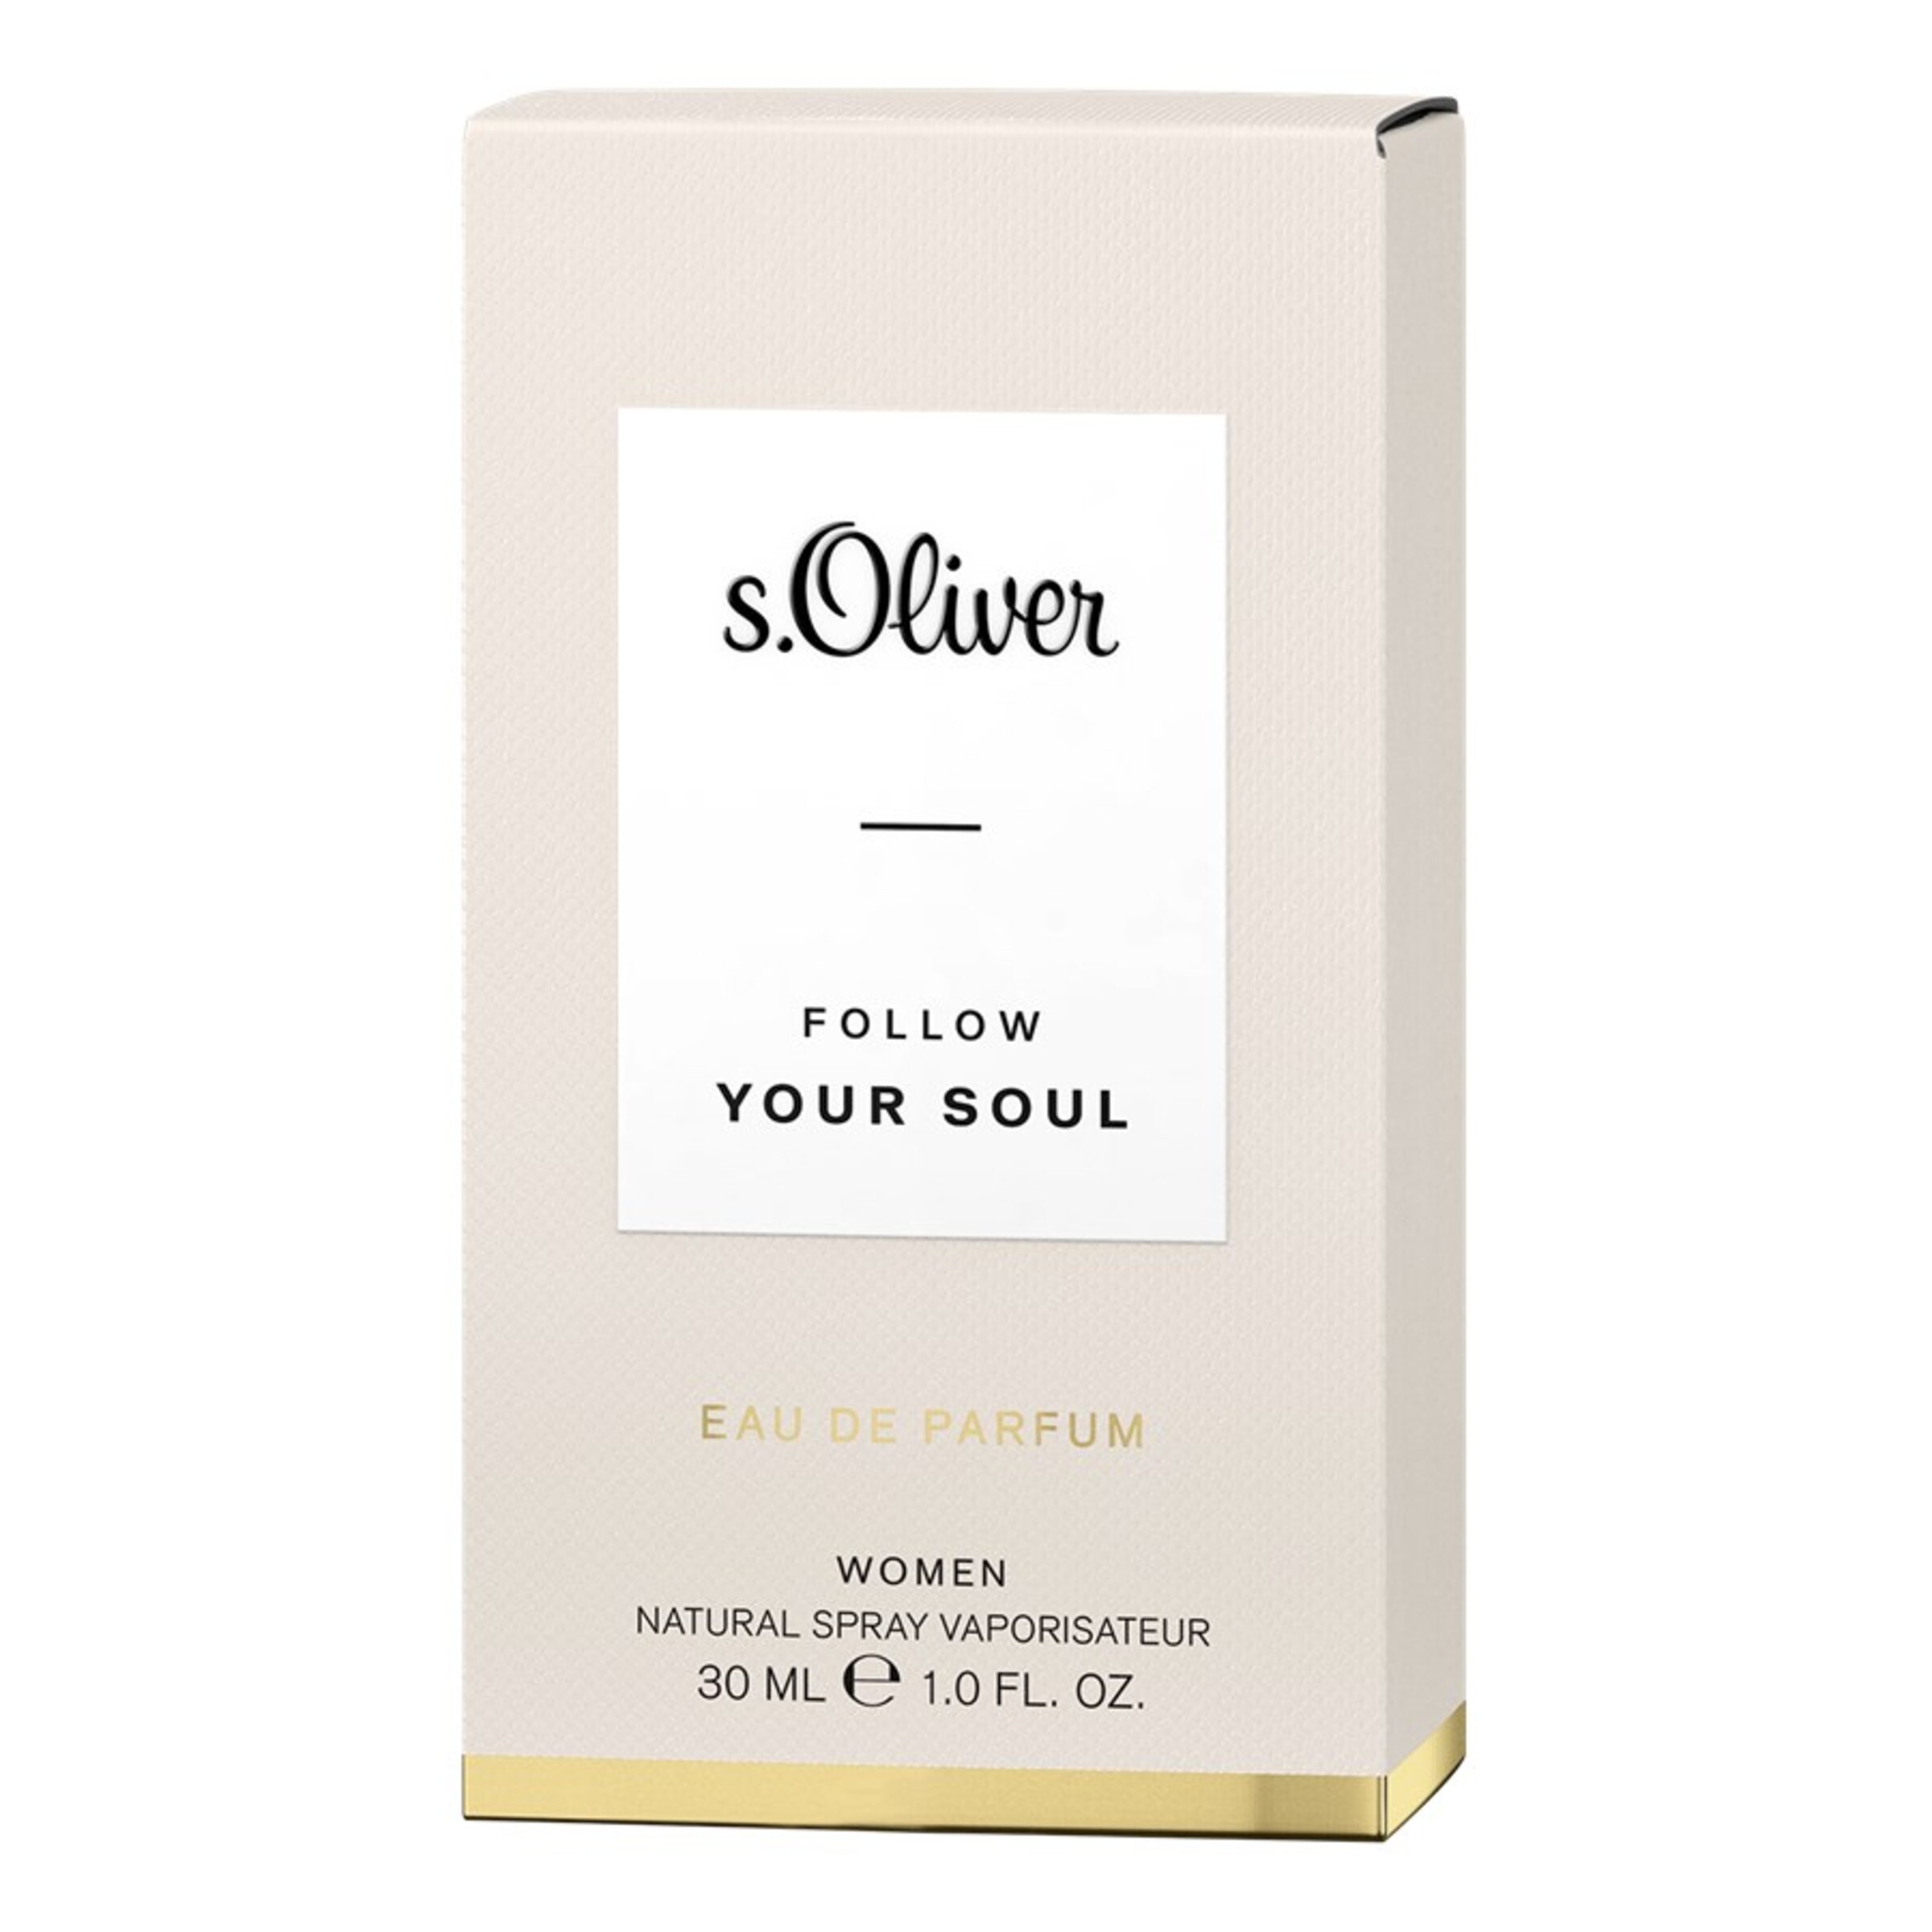 s.Oliver Eau de Parfum FOLLOW YOUR SOUL in 